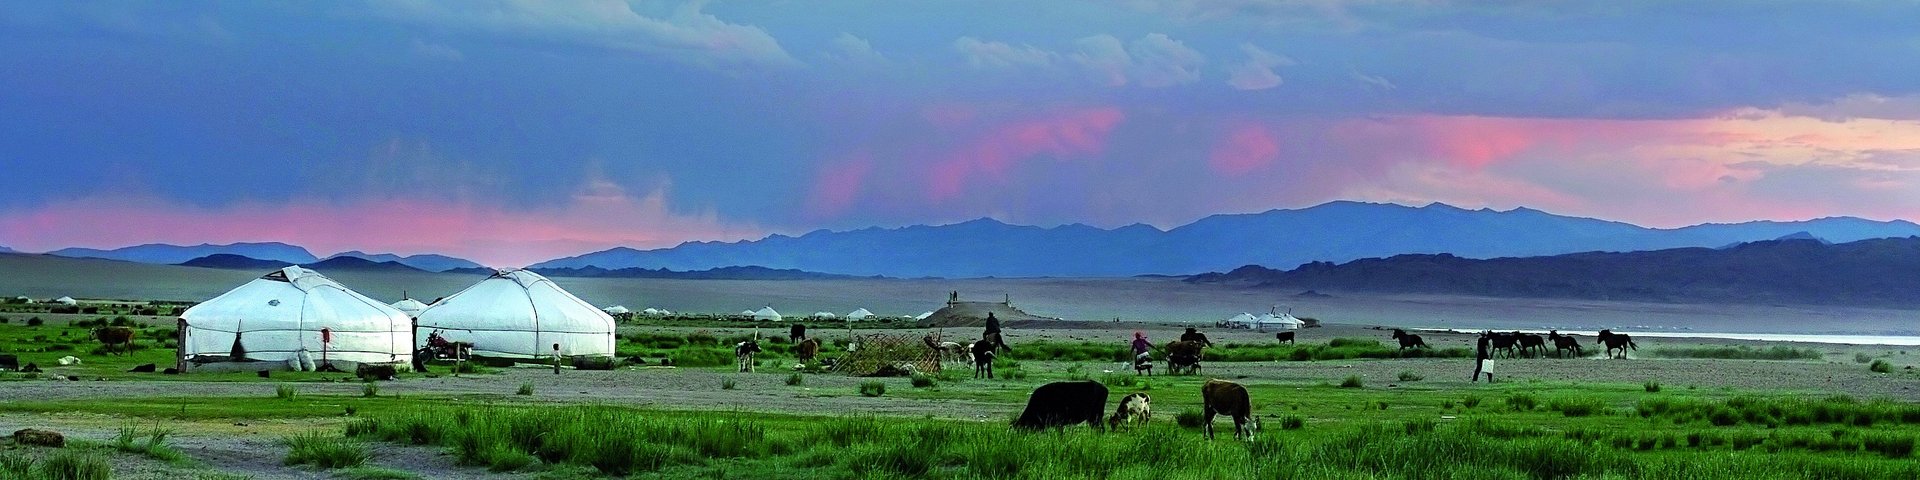 Jurten in der Mongolei